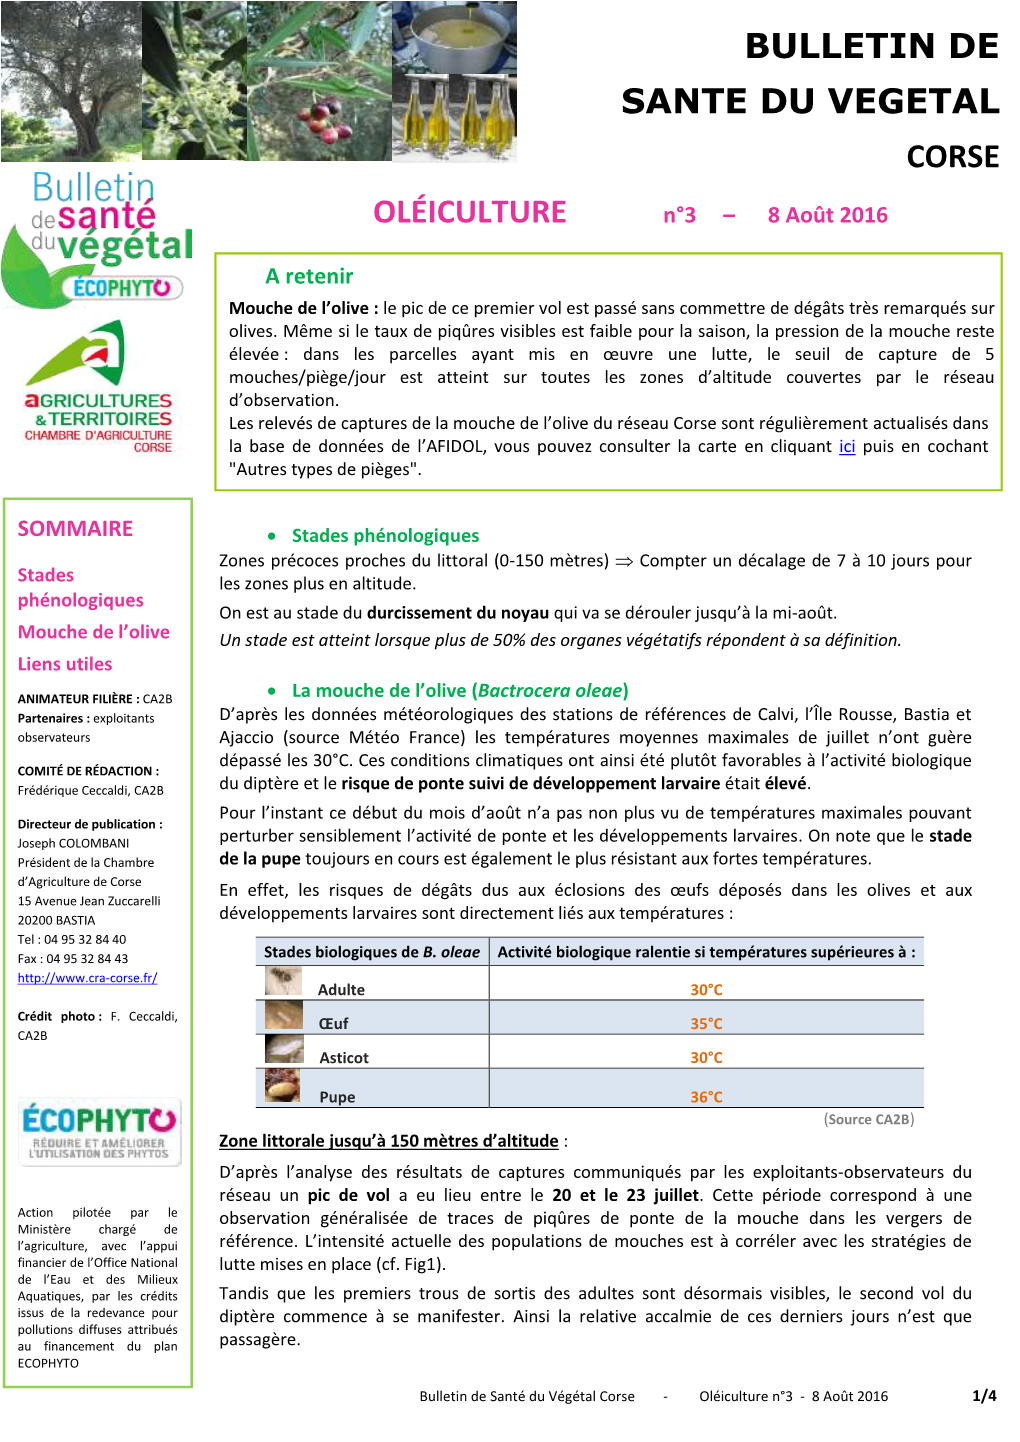 Bulletin De Sante Du Vegetal Corse Oléiculture